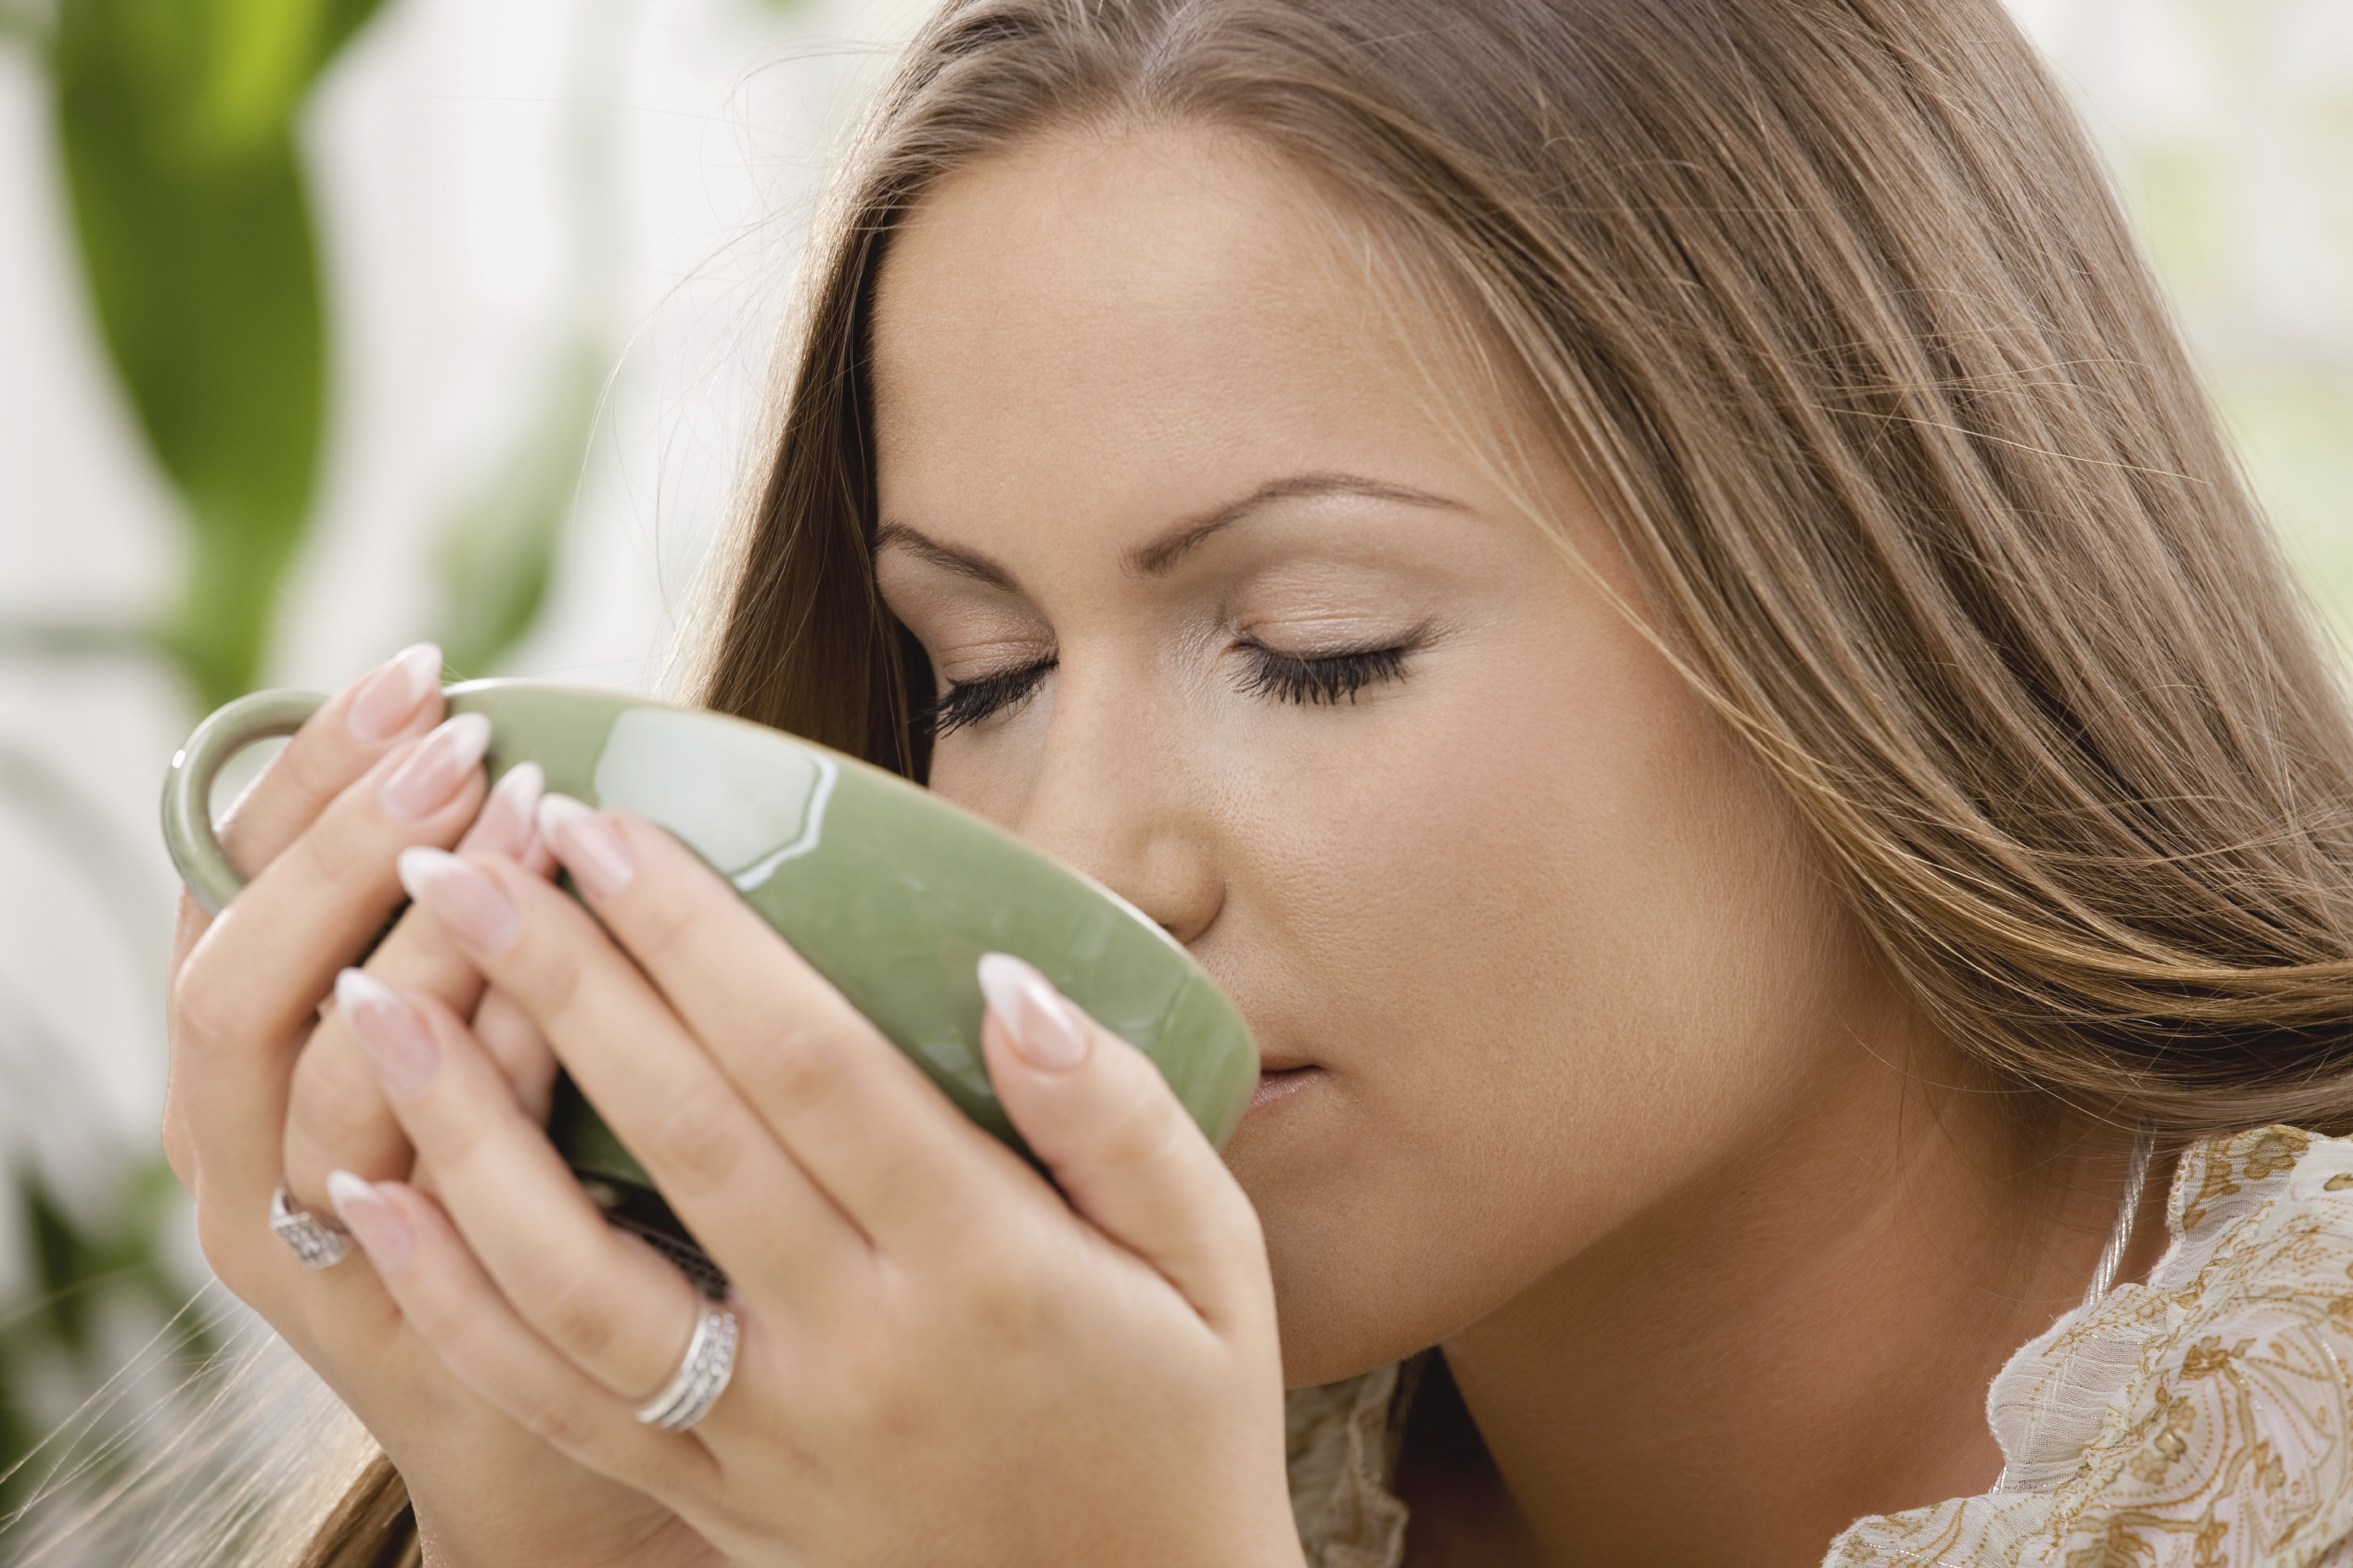 Чай питьевой. Девушка пьет чай. Женщина пьет травяной чай. Женщина с травяным чаем. Девушка пьет отвар.